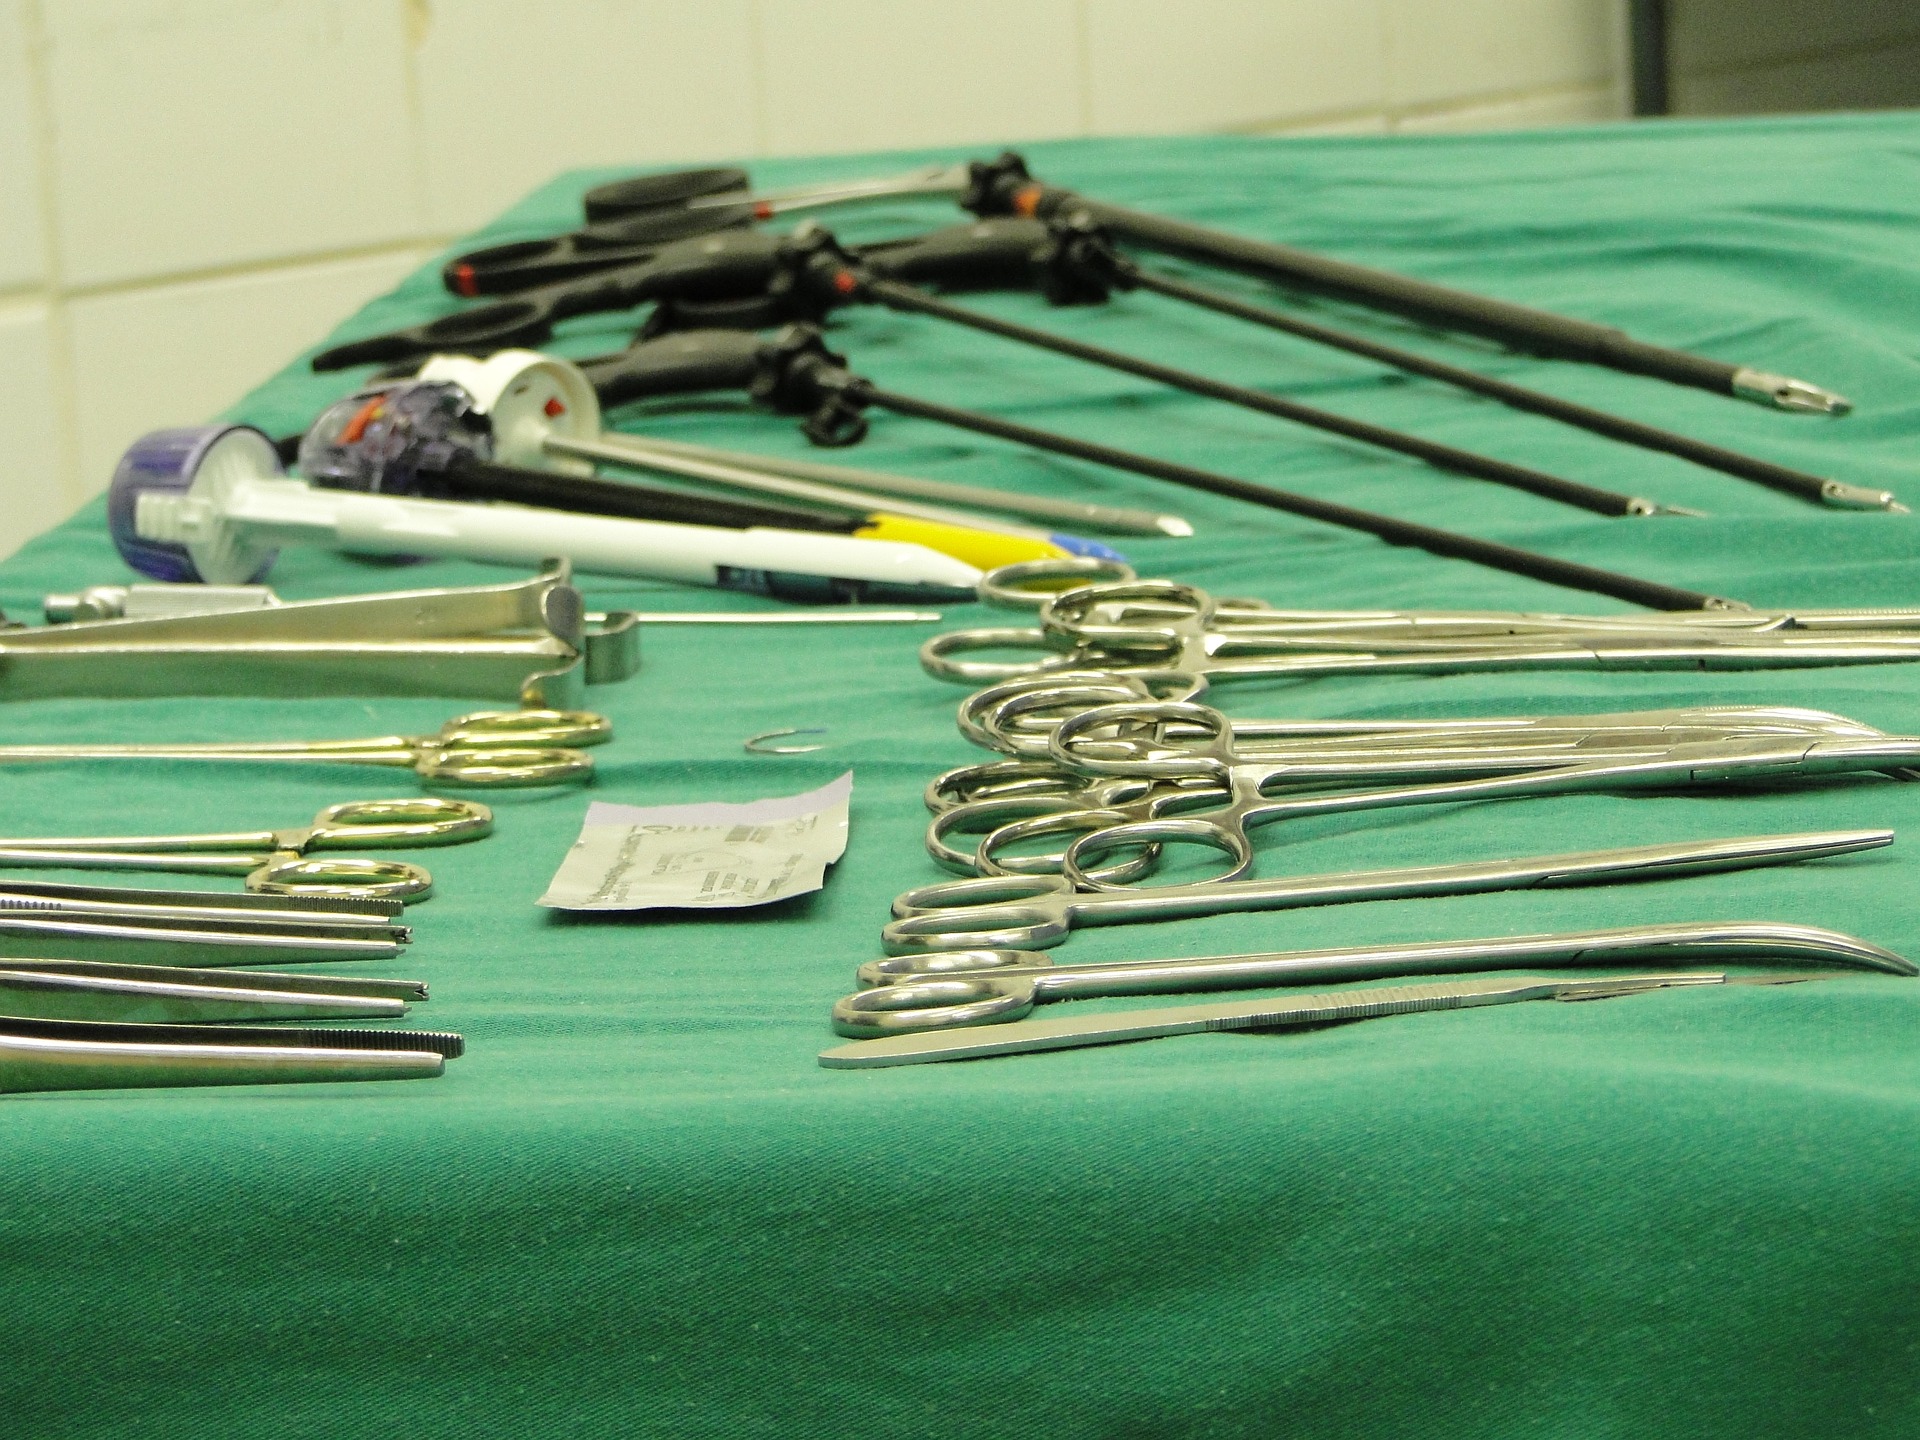 Kleszczyki chirurgiczne obok igłotrzymaczy i nożyczek chirurgicznych są jednymi z najczęściej wykorzystywanych instrumentów w takcie zabiegów z zakresu chirurgii ogólnej i nie tylko (Źródło: Pixabay.com, Autor: Mériele Oliveira Méri)